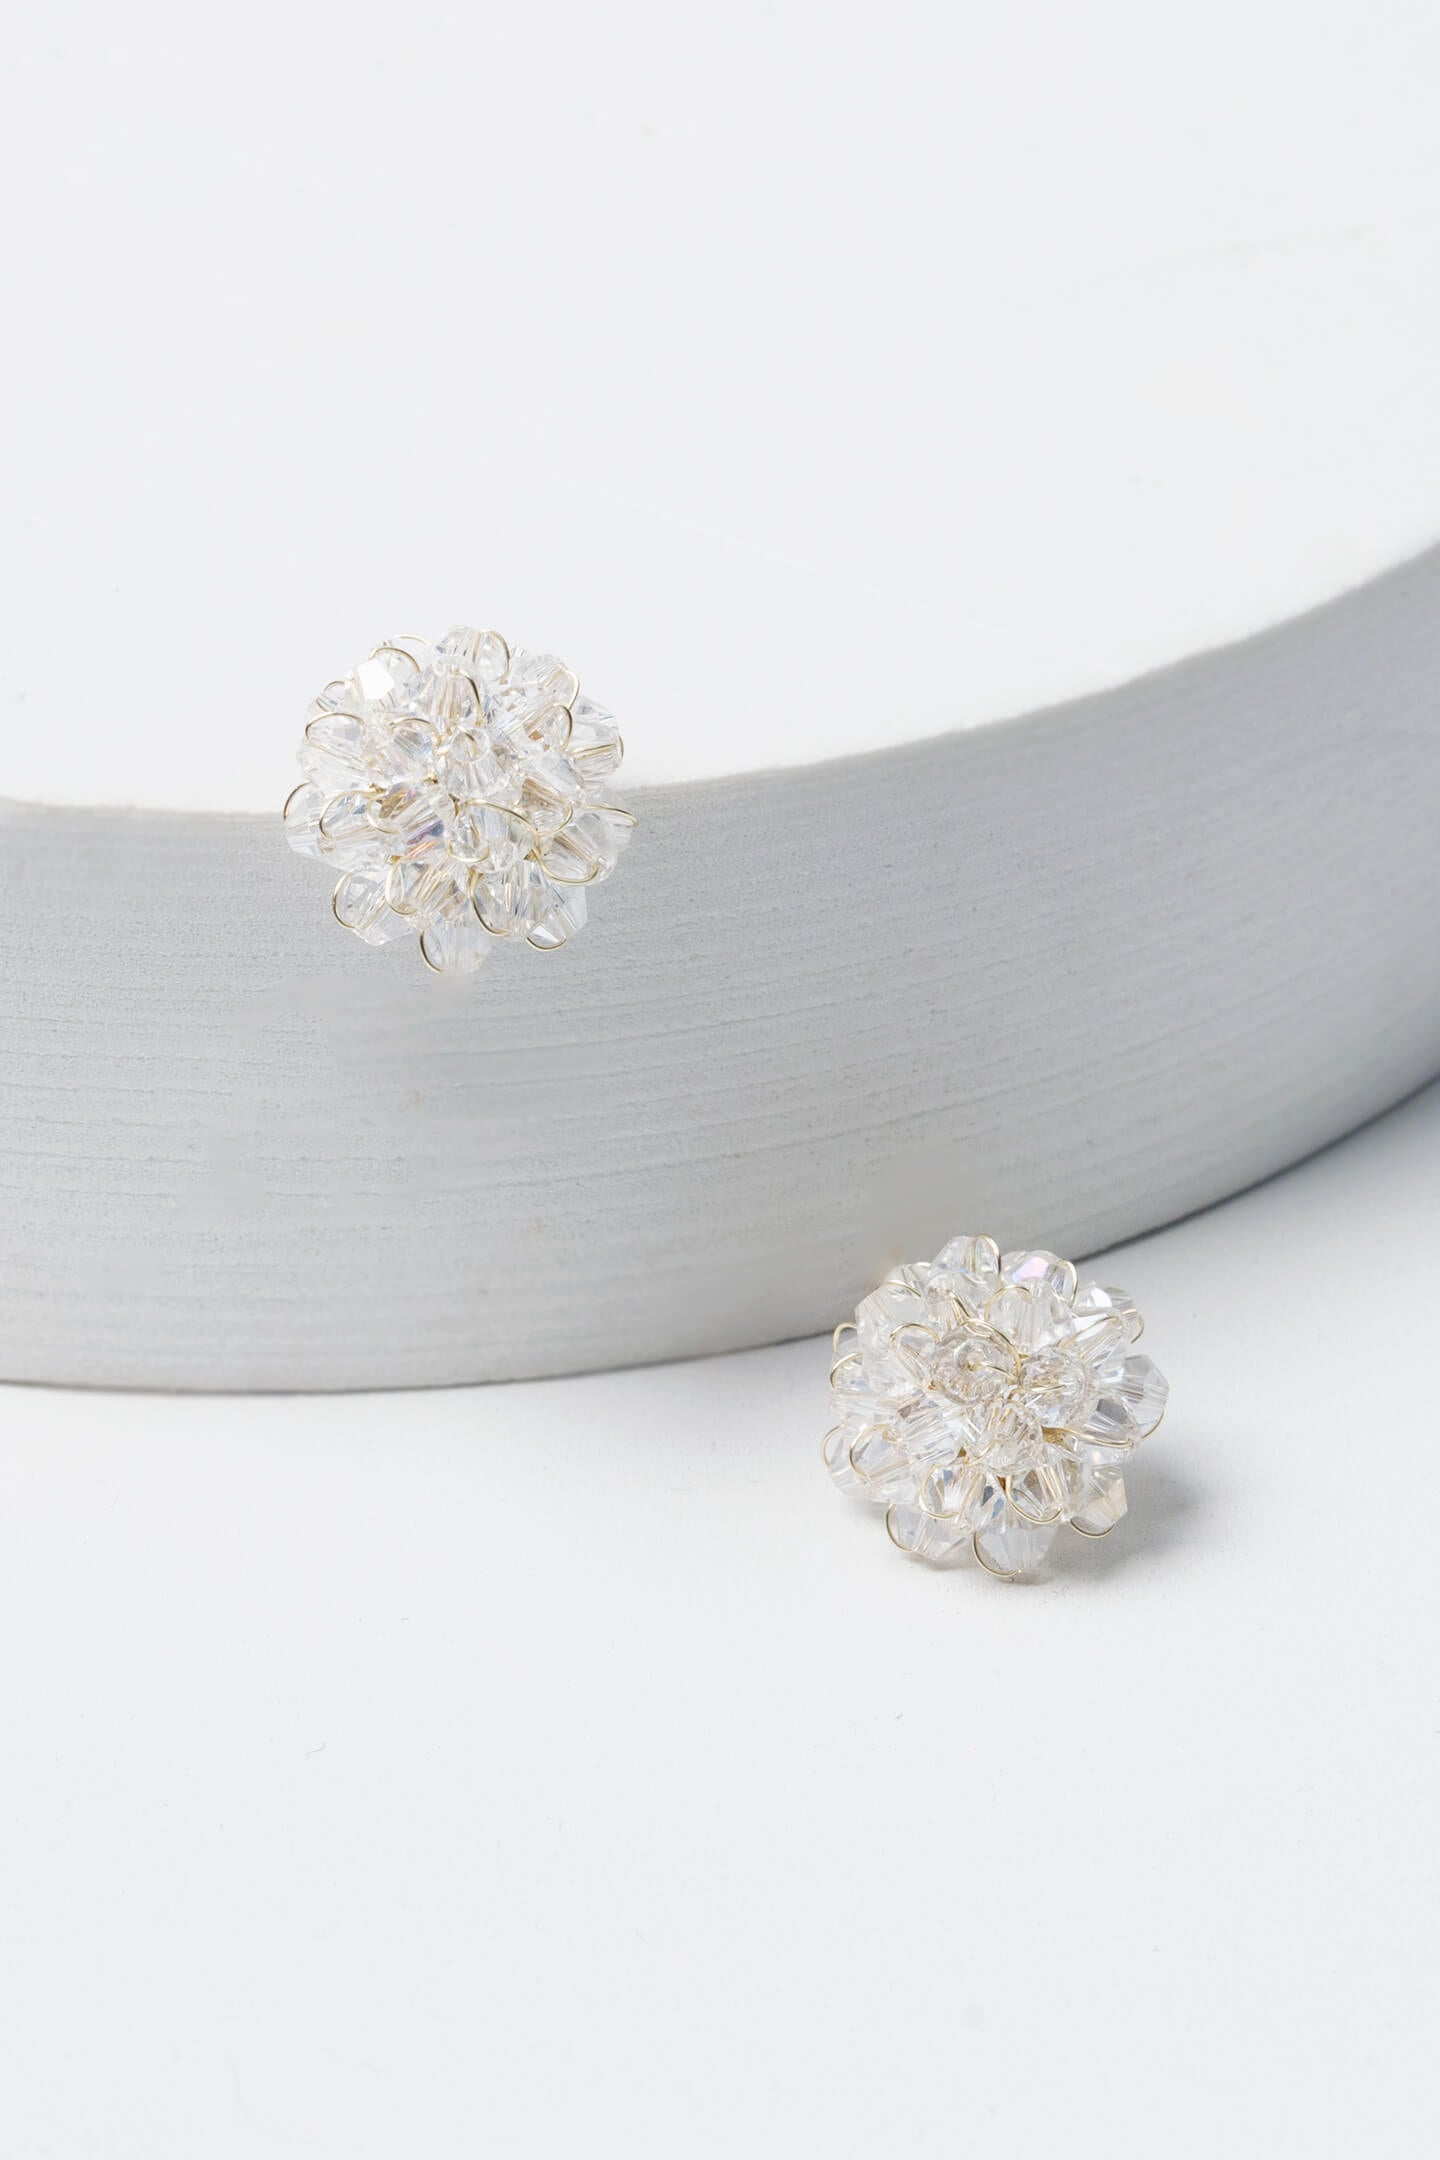 Crystal Flower Earrings